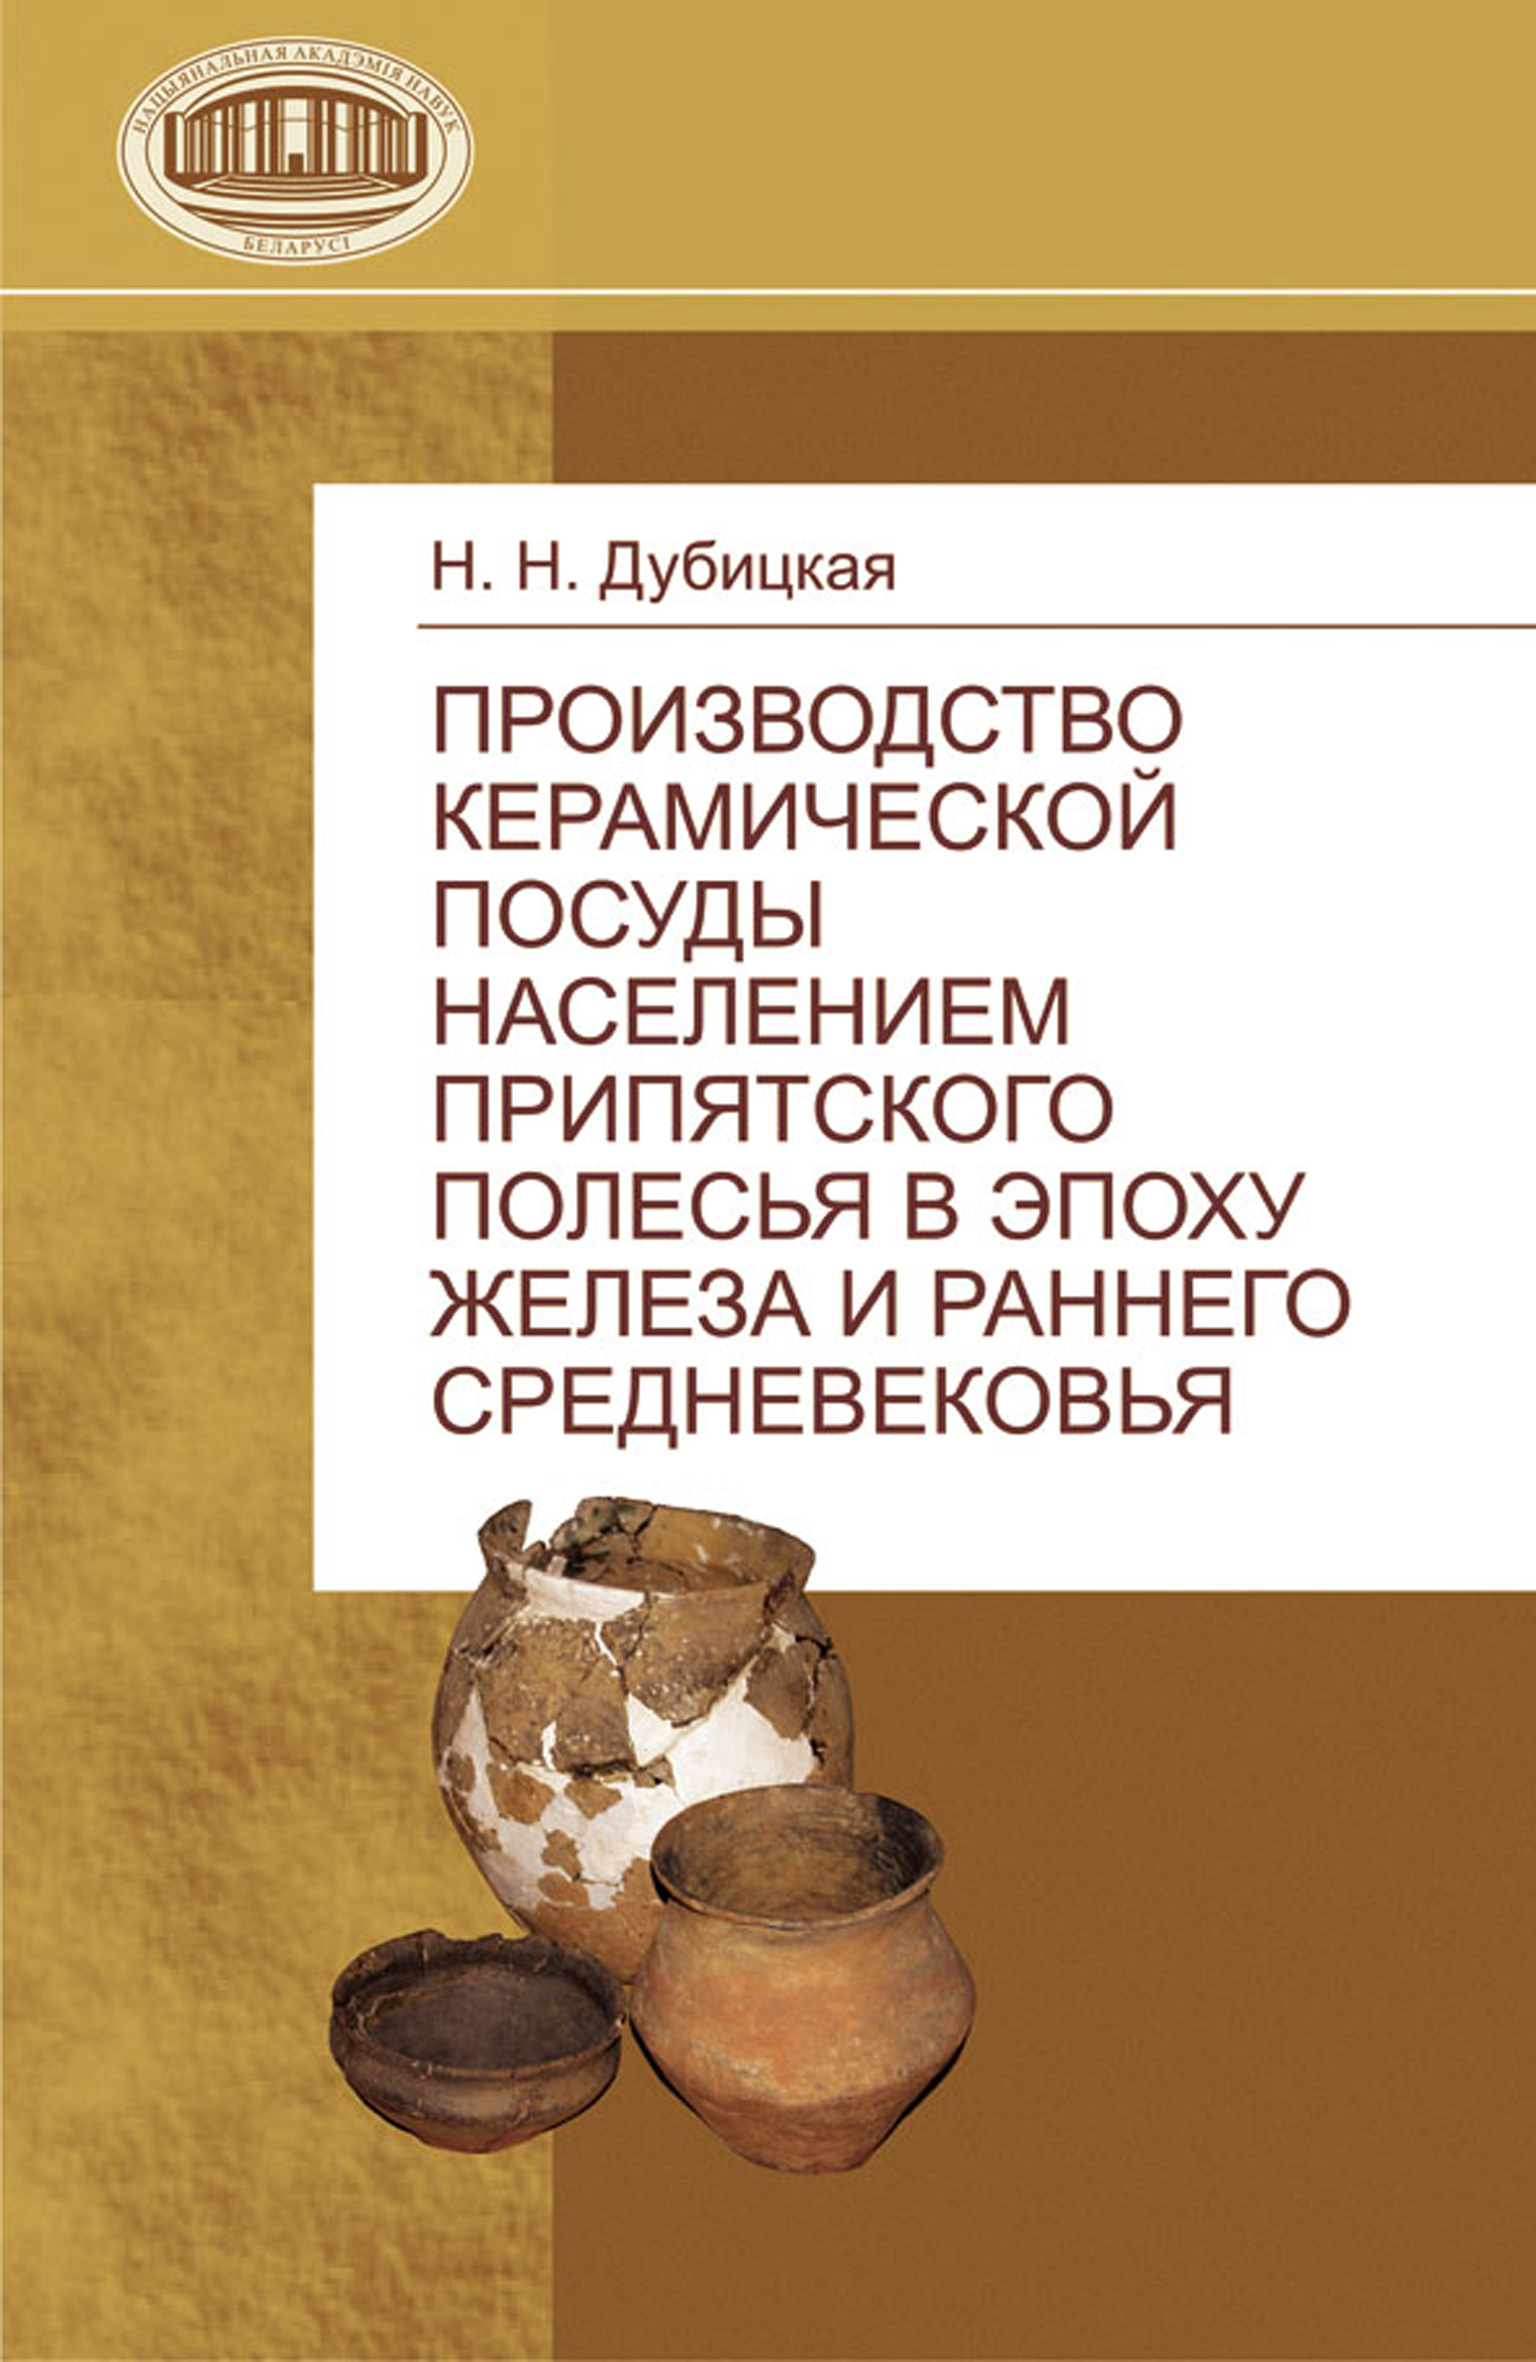 Производство керамической посуды населением Припятского Полесья в эпоху железа и раннего средневековья